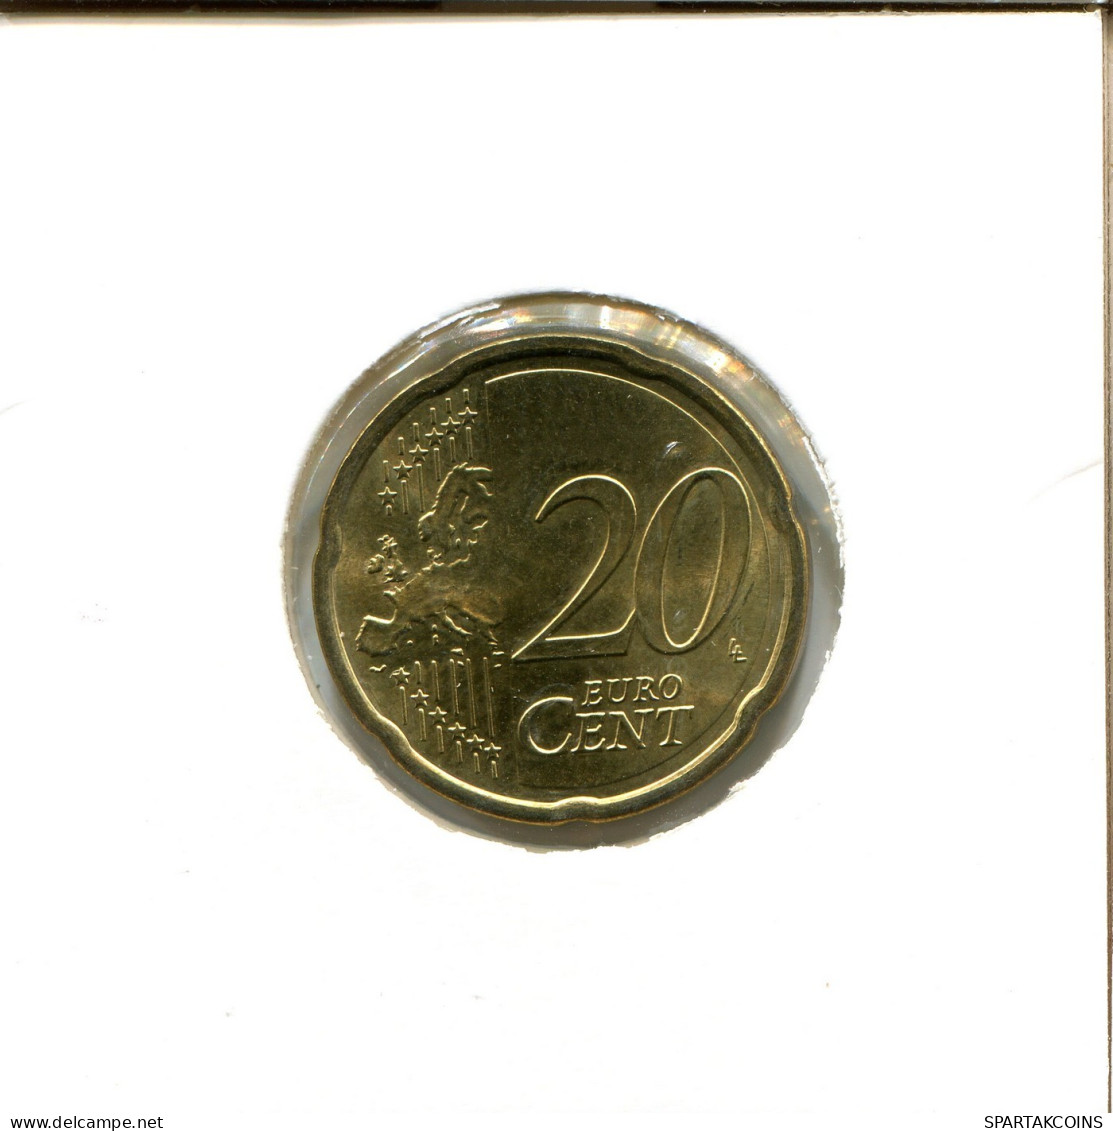 20 EURO CENTS 2013 AUSTRIA Moneda #EU034.E.A - Austria